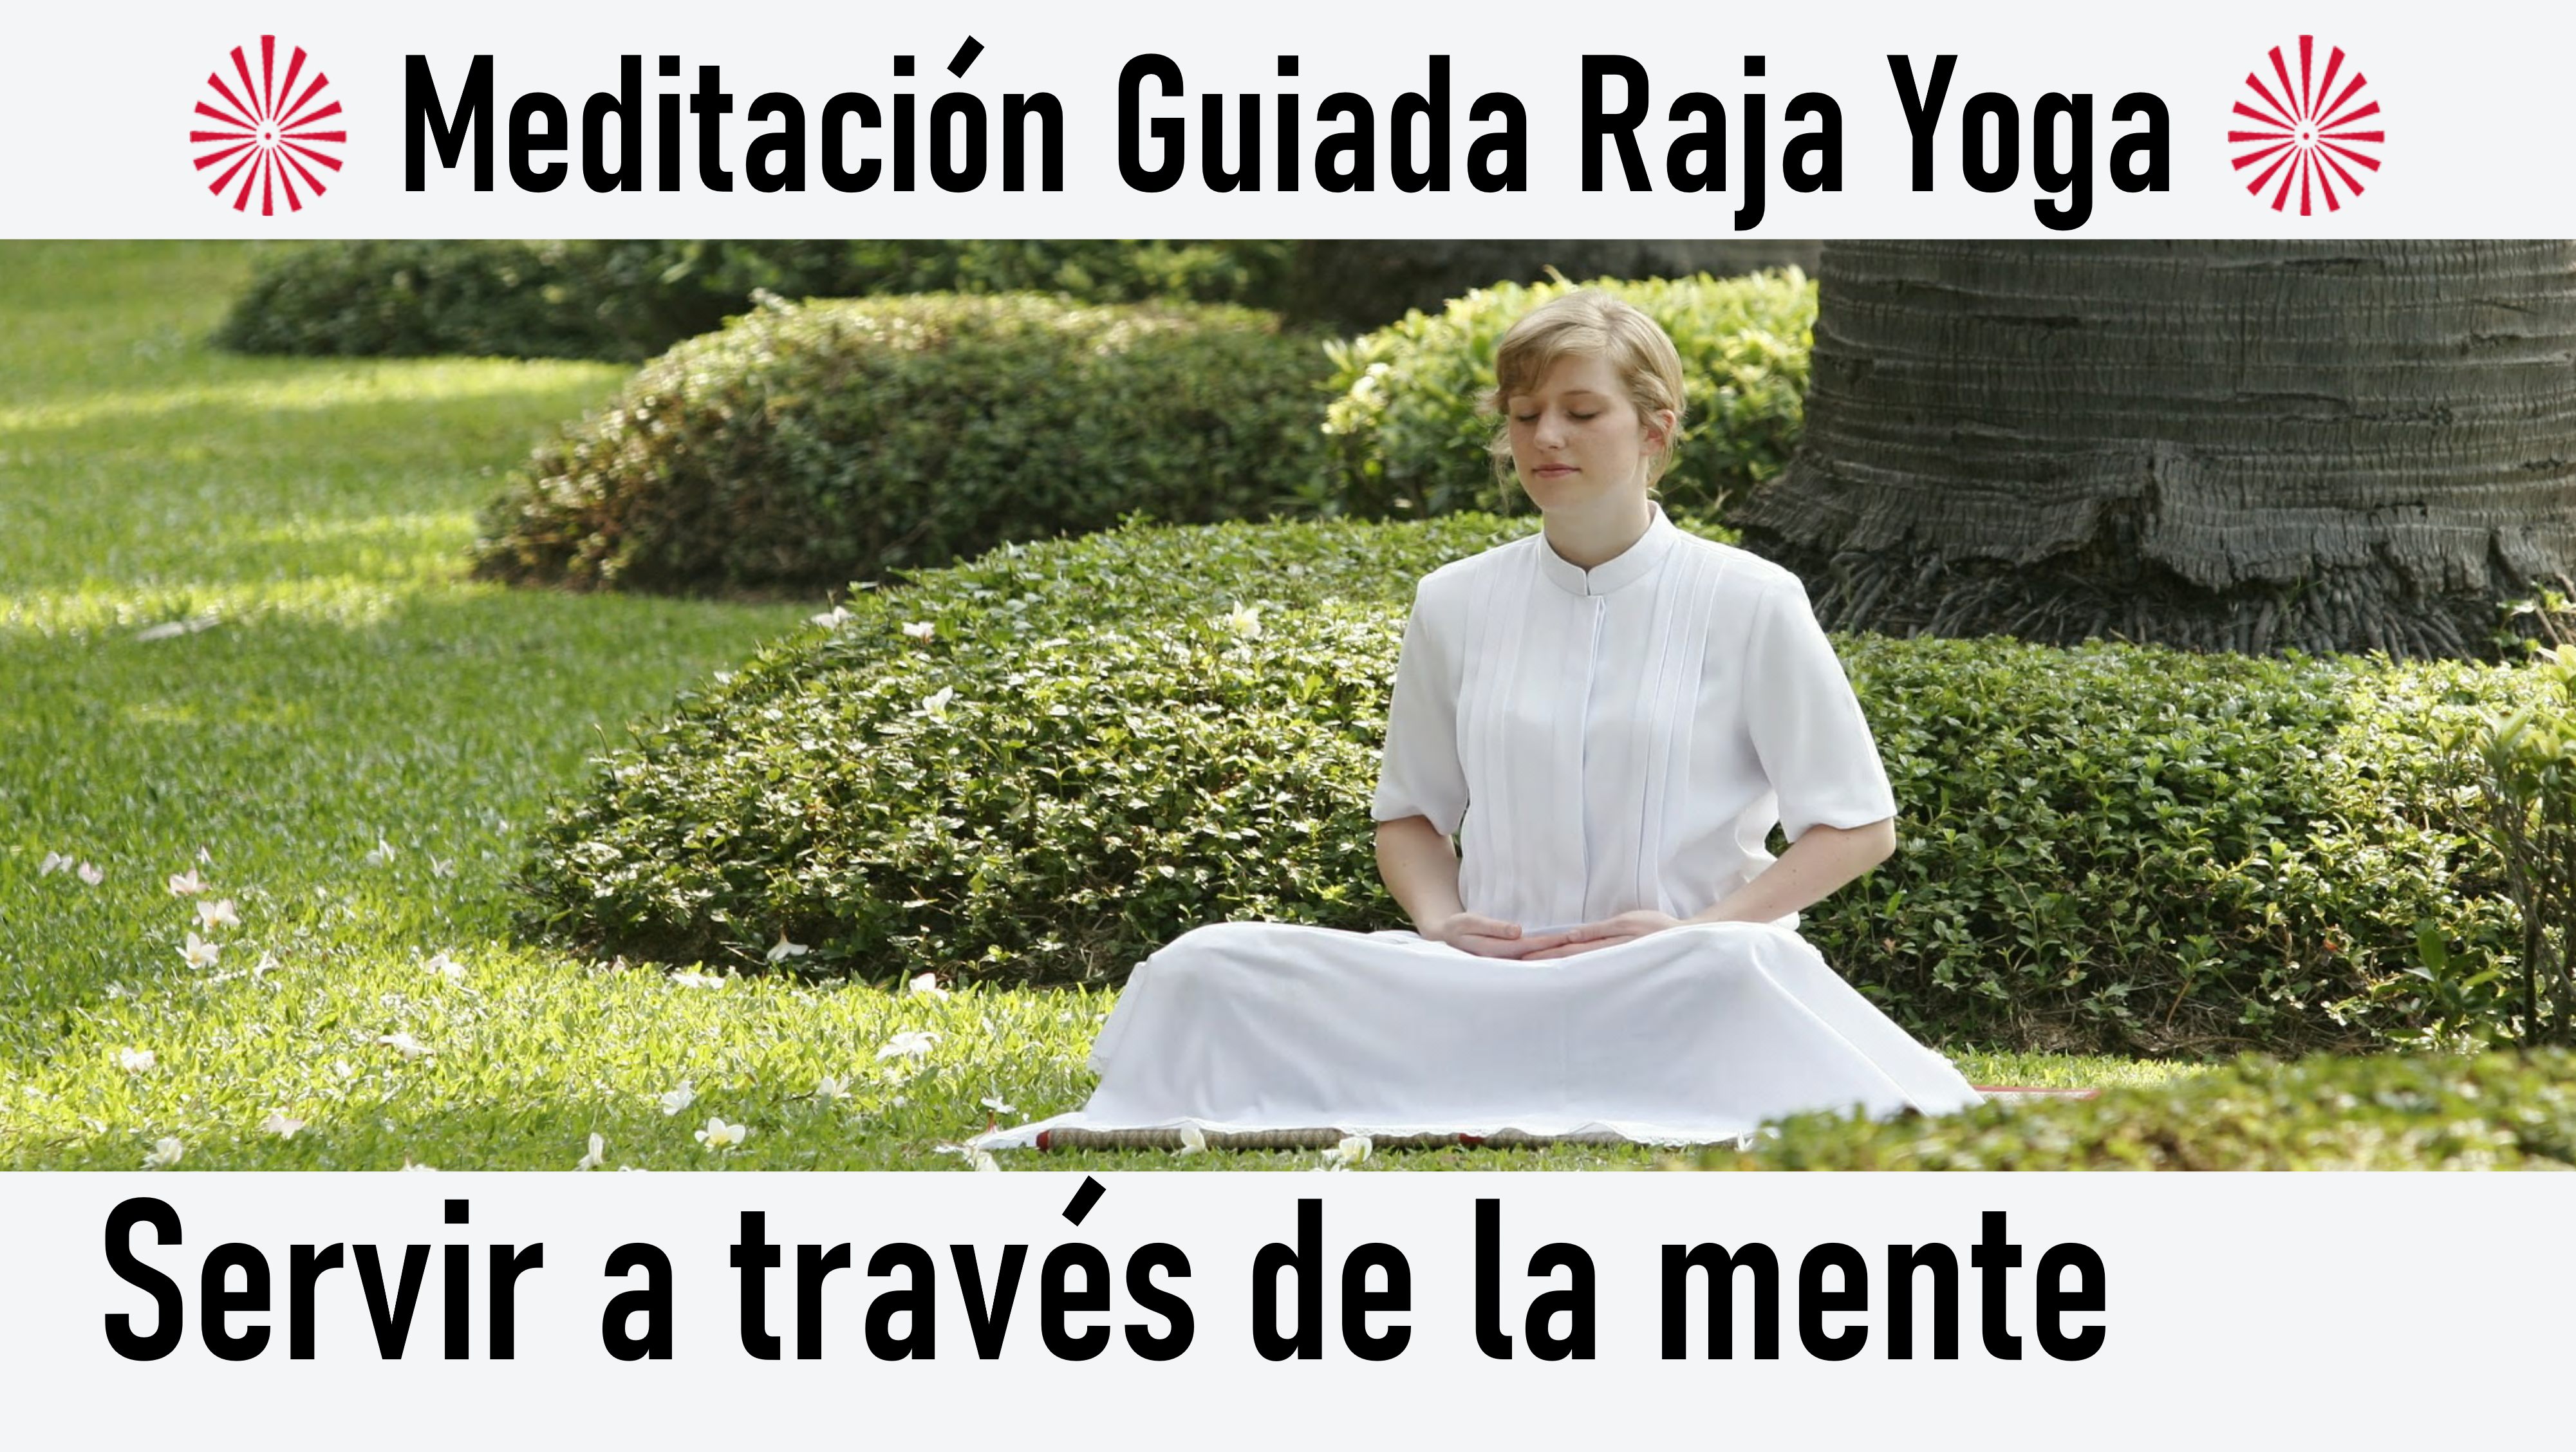 Meditación Raja Yoga: Servir a través de la mente (22 Junio 2020) On-line desde Madrid